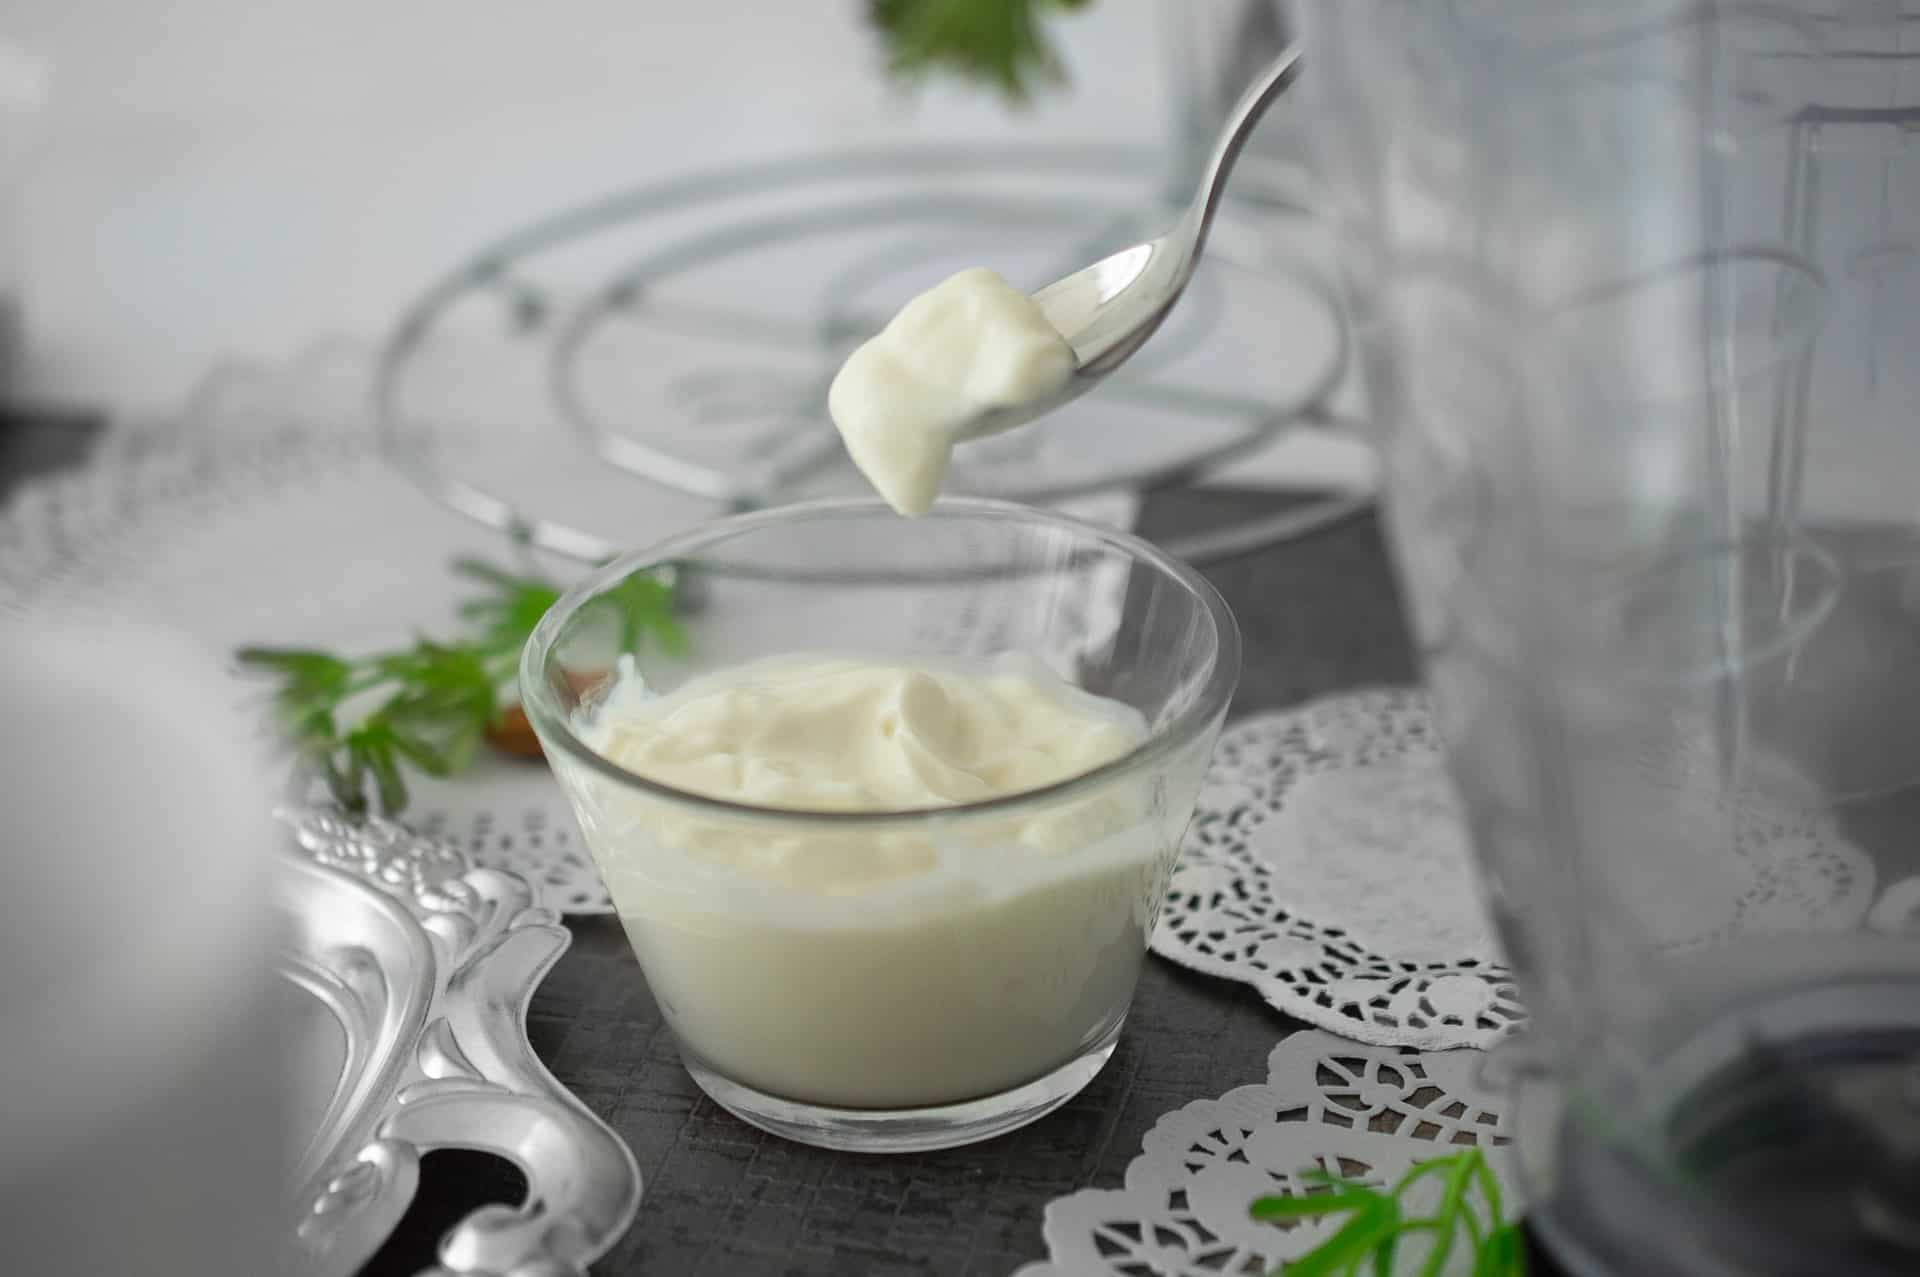 hacer yogurt casero a paso - Comedera - Recetas, tips y para comer mejor.